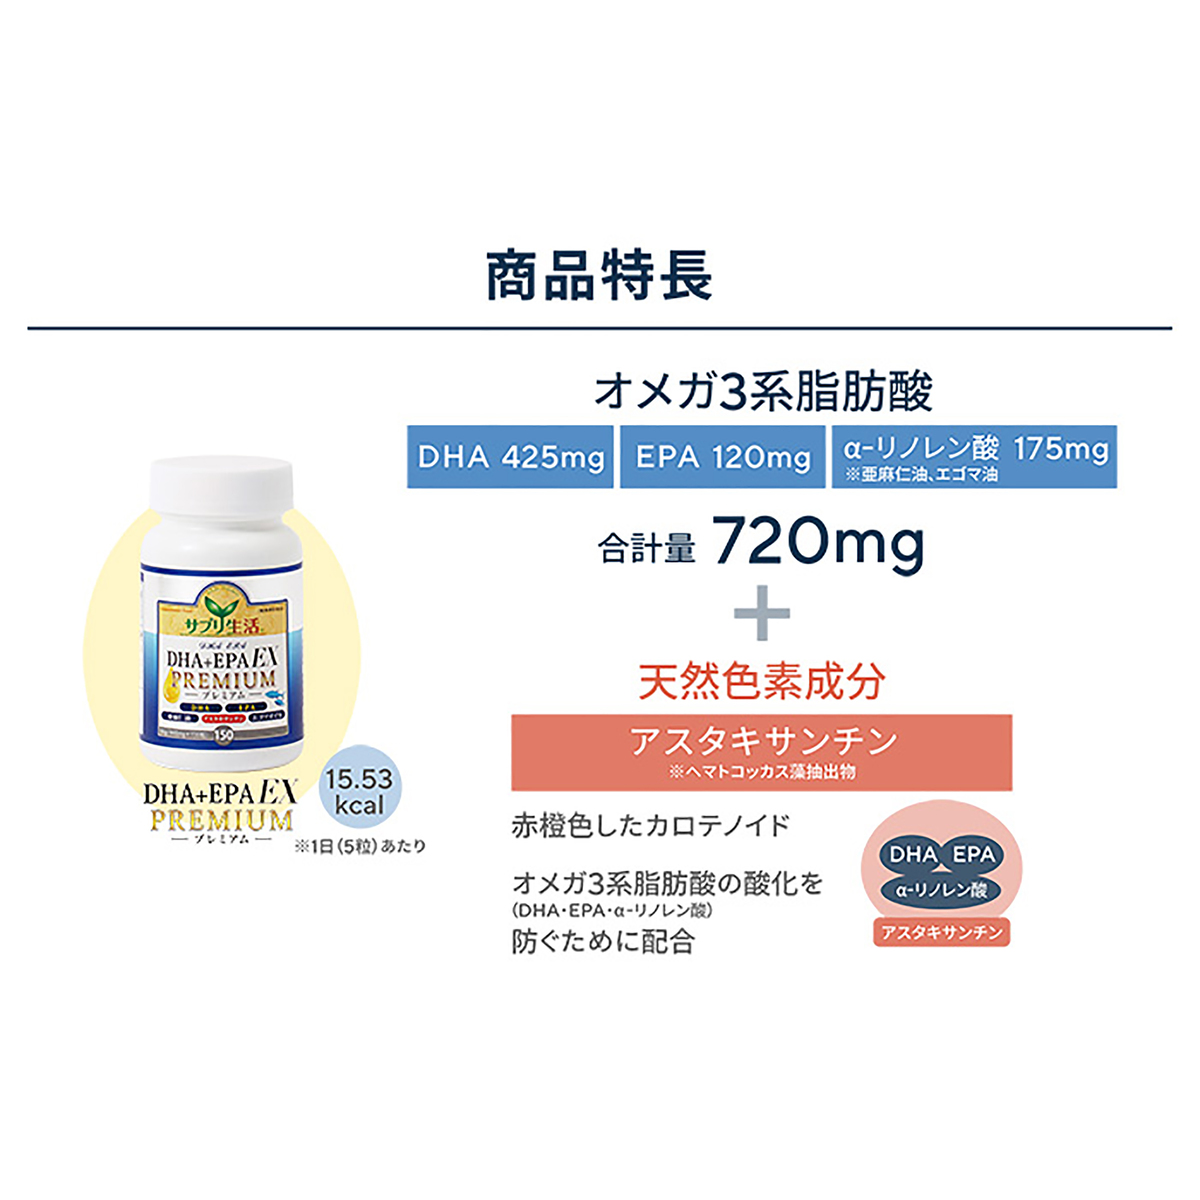 サプリ生活「DHA+EPA」EX プレミアム 3個セット サプリ生活 - QVC.jp